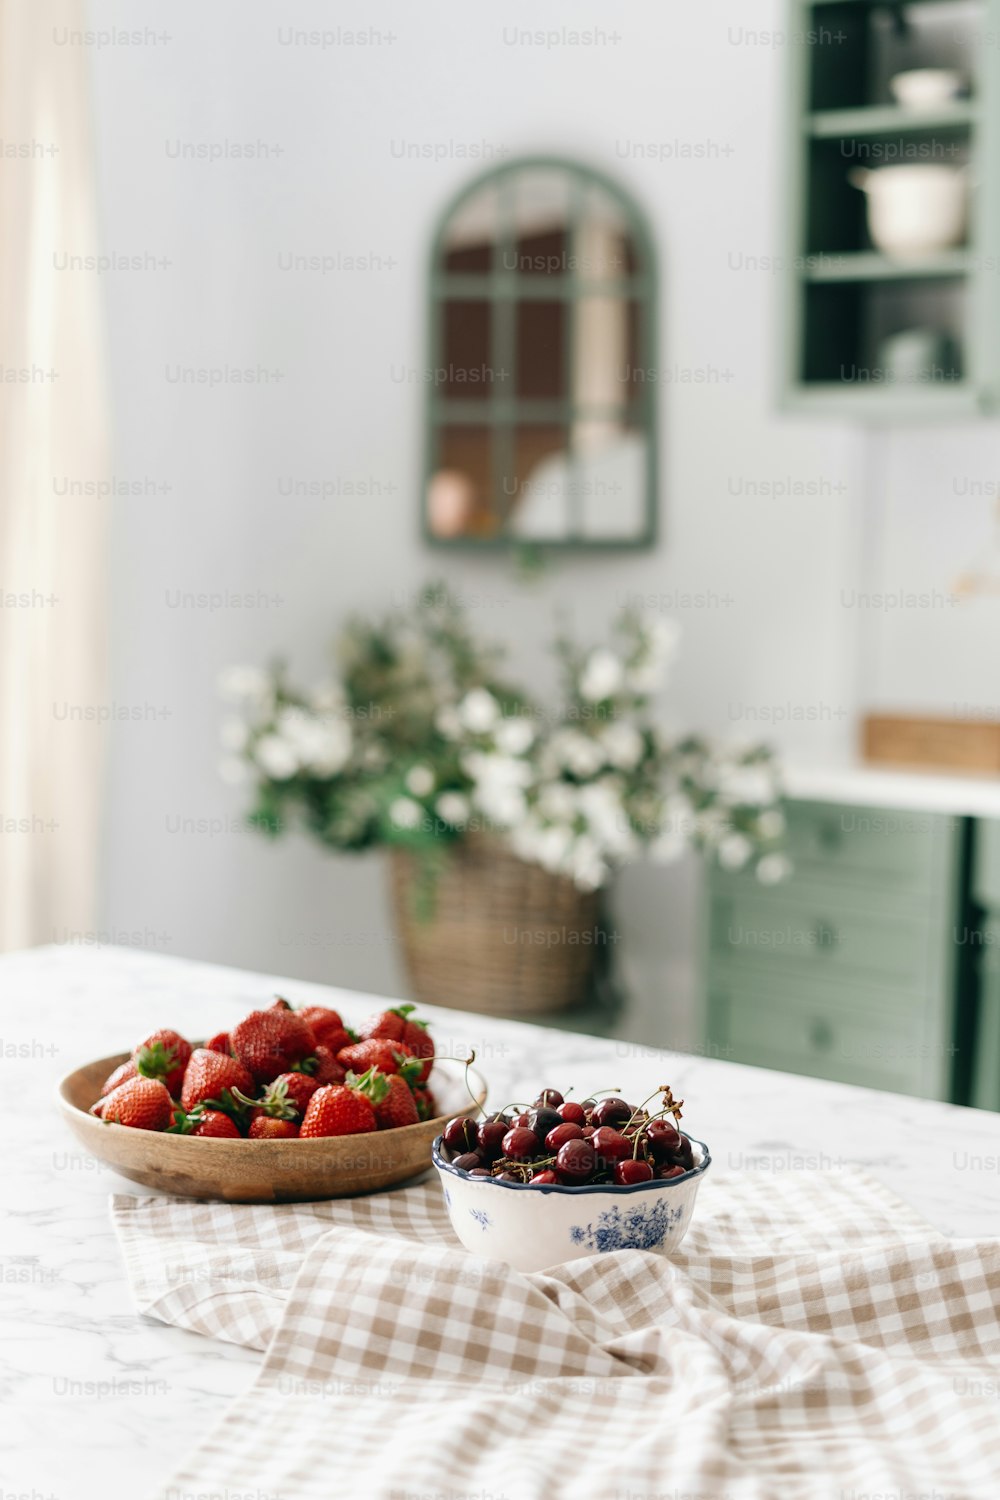 Paar Schalen voller Kirschen und Erdbeeren auf Tischdecke auf Kücheninsel mit Marmorplatte, grüne Vintage-Möbel in verschwommenem Hintergrund, geflochtener Korb gefüllt mit Blumen. Vertikale Aufnahme